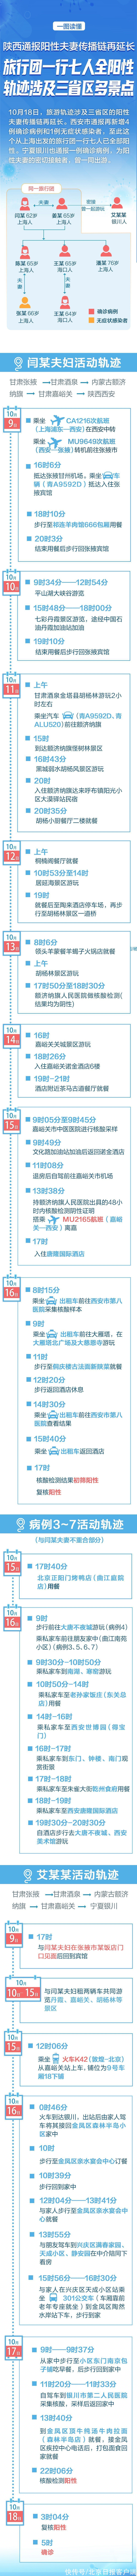 旅行团|陕西“旅行团传播链”已累计8人阳性，涉及四省区轨迹一图读懂